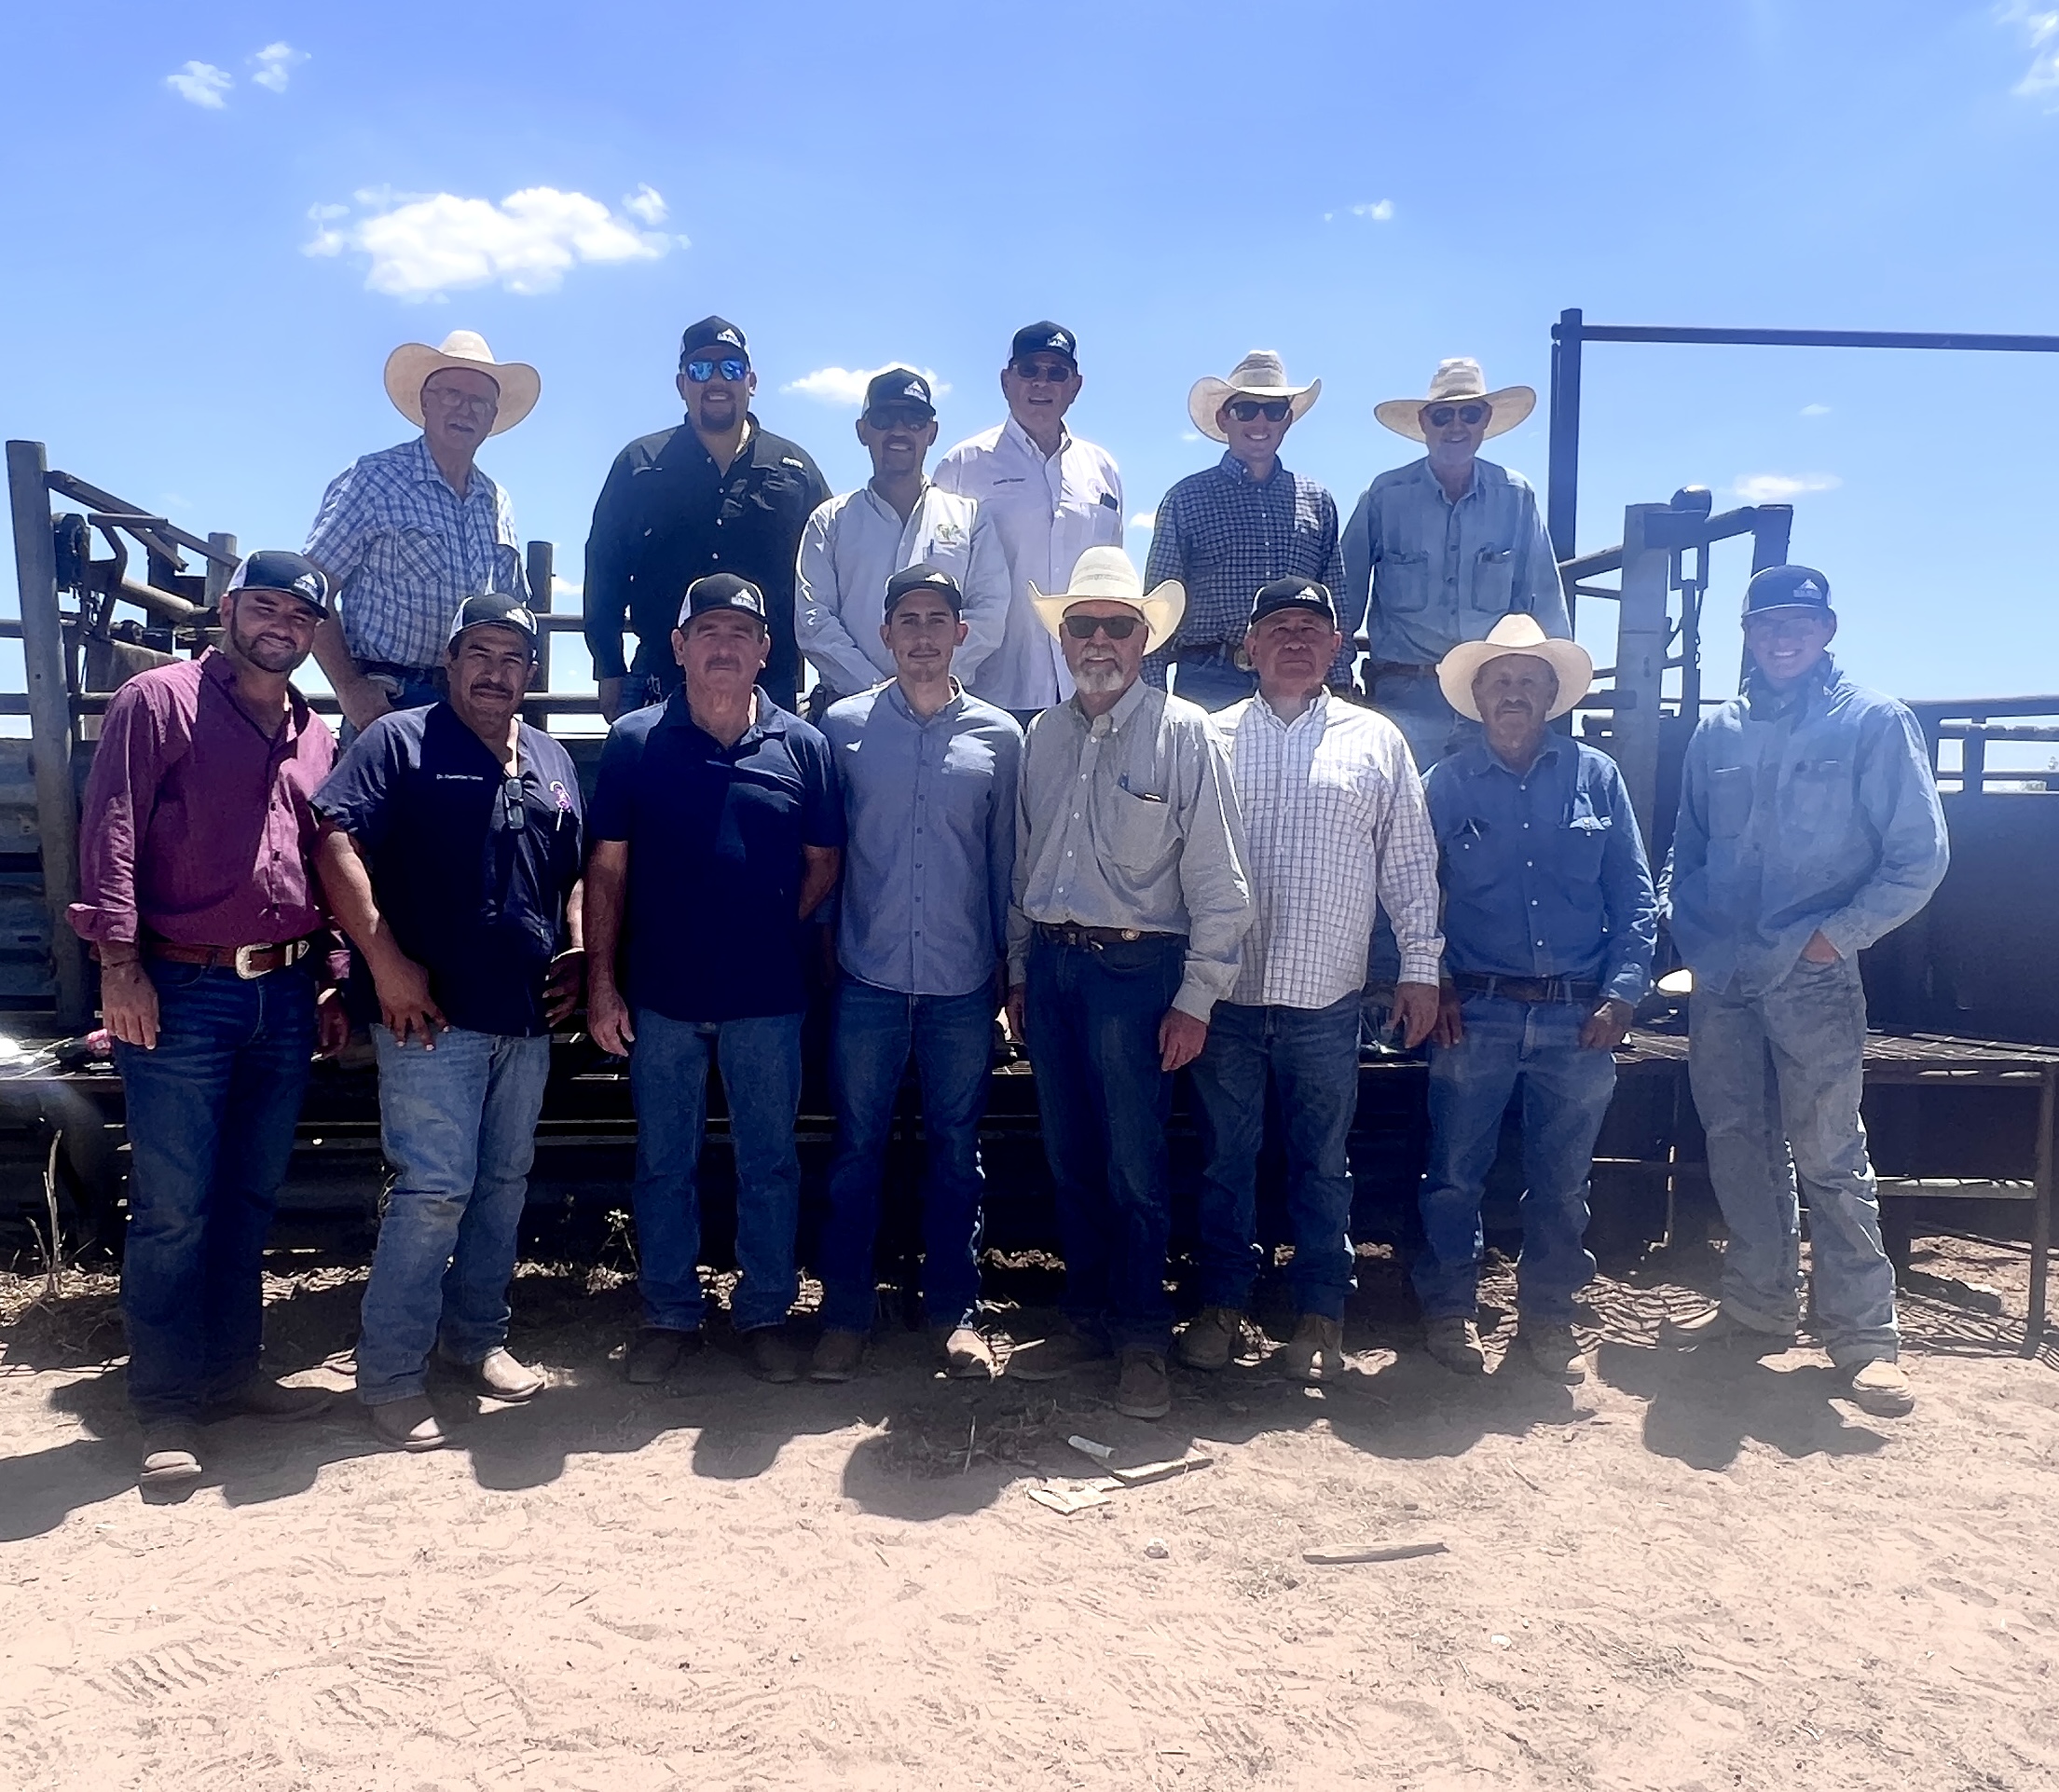 Catorce hombres forman un grupo y posan para una foto frente a un corral de ganado.